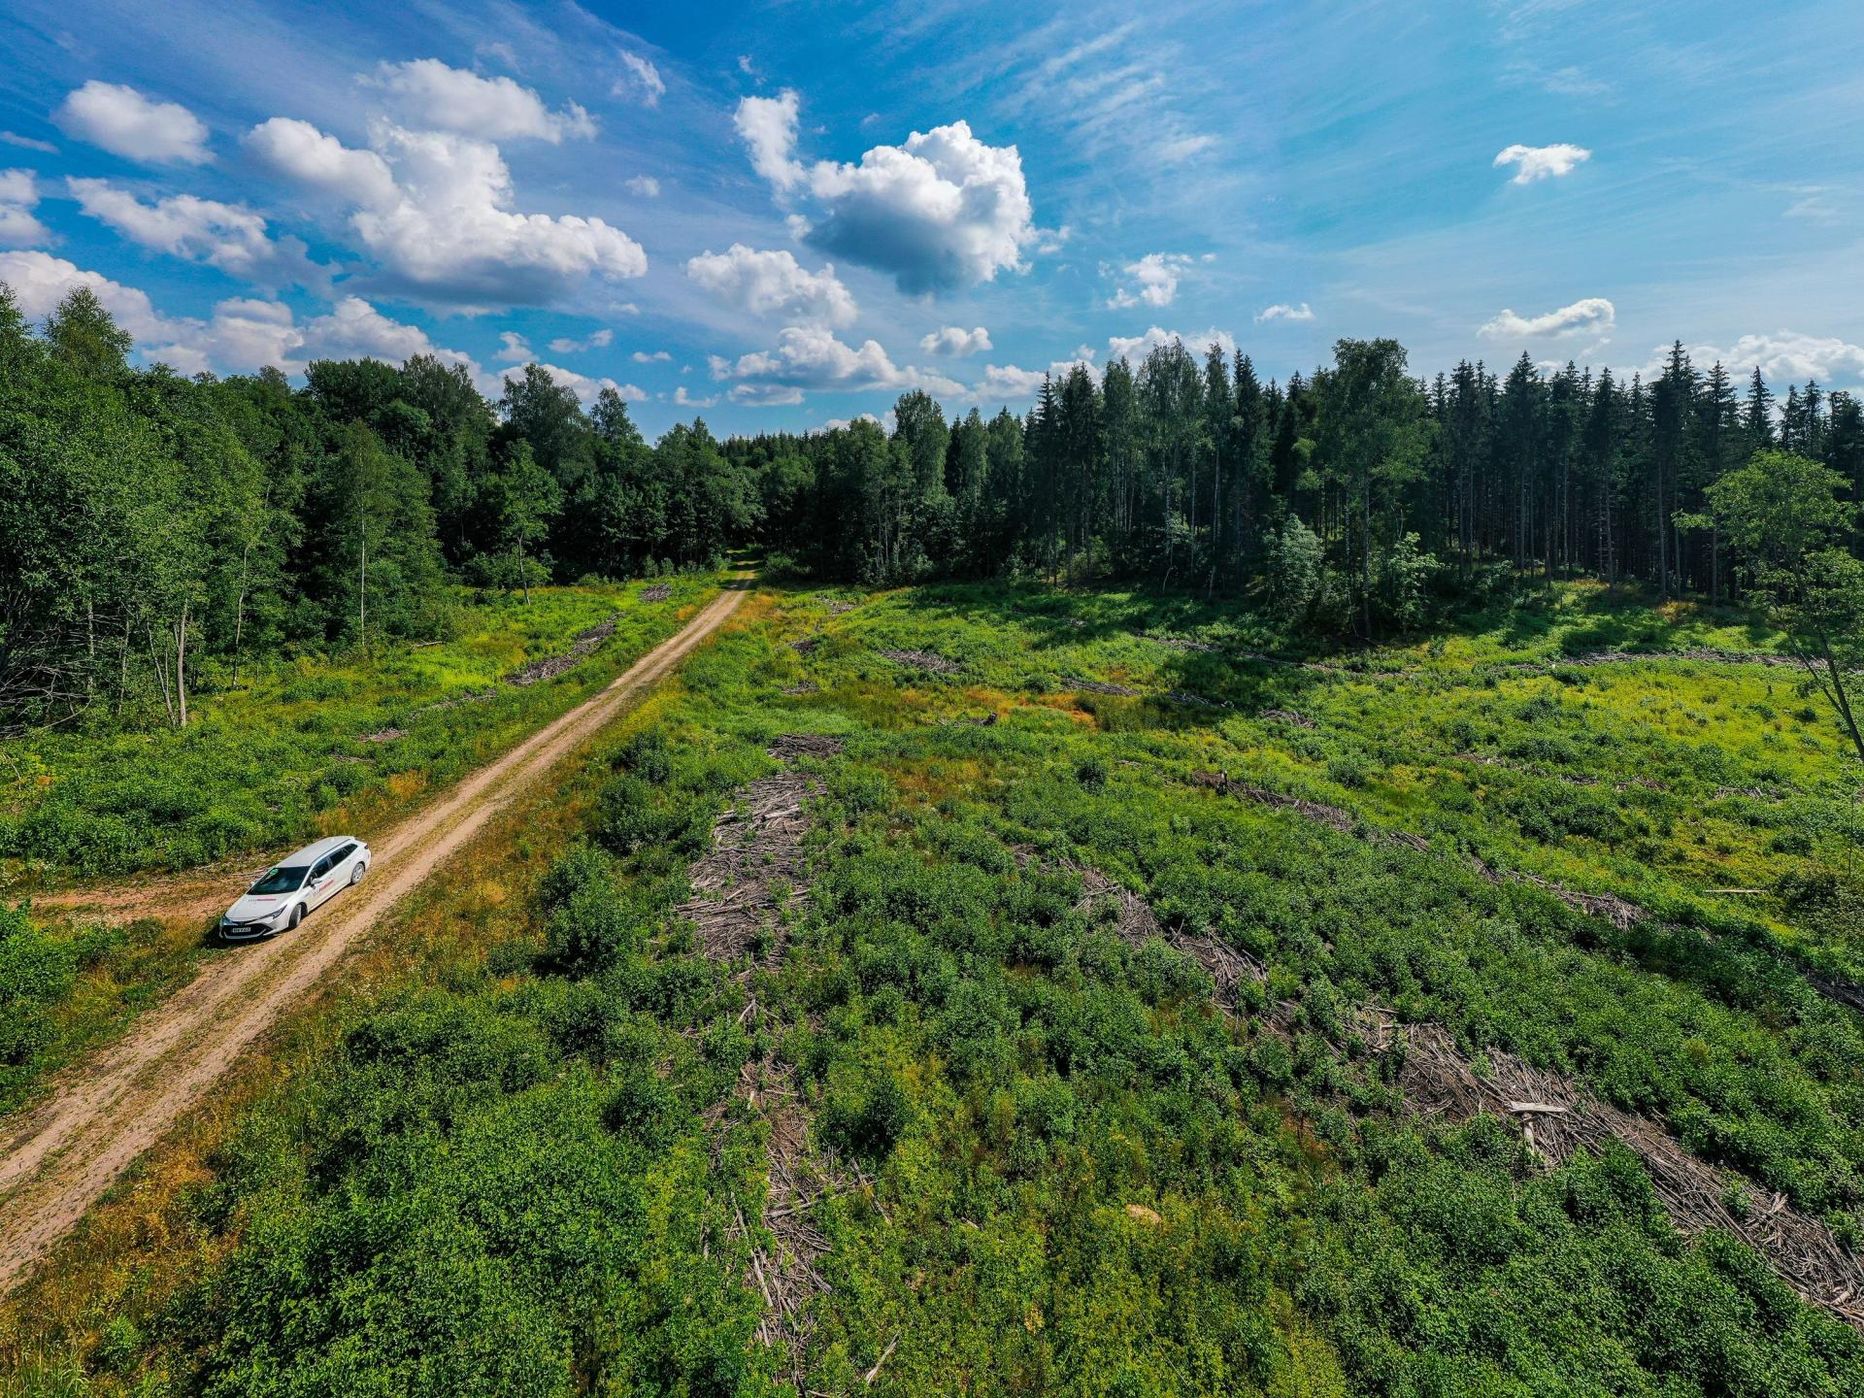 RMK lageraie riivas kaitsealuste liikide elupaiku Otepää looduspargis Natura 2000 alal.